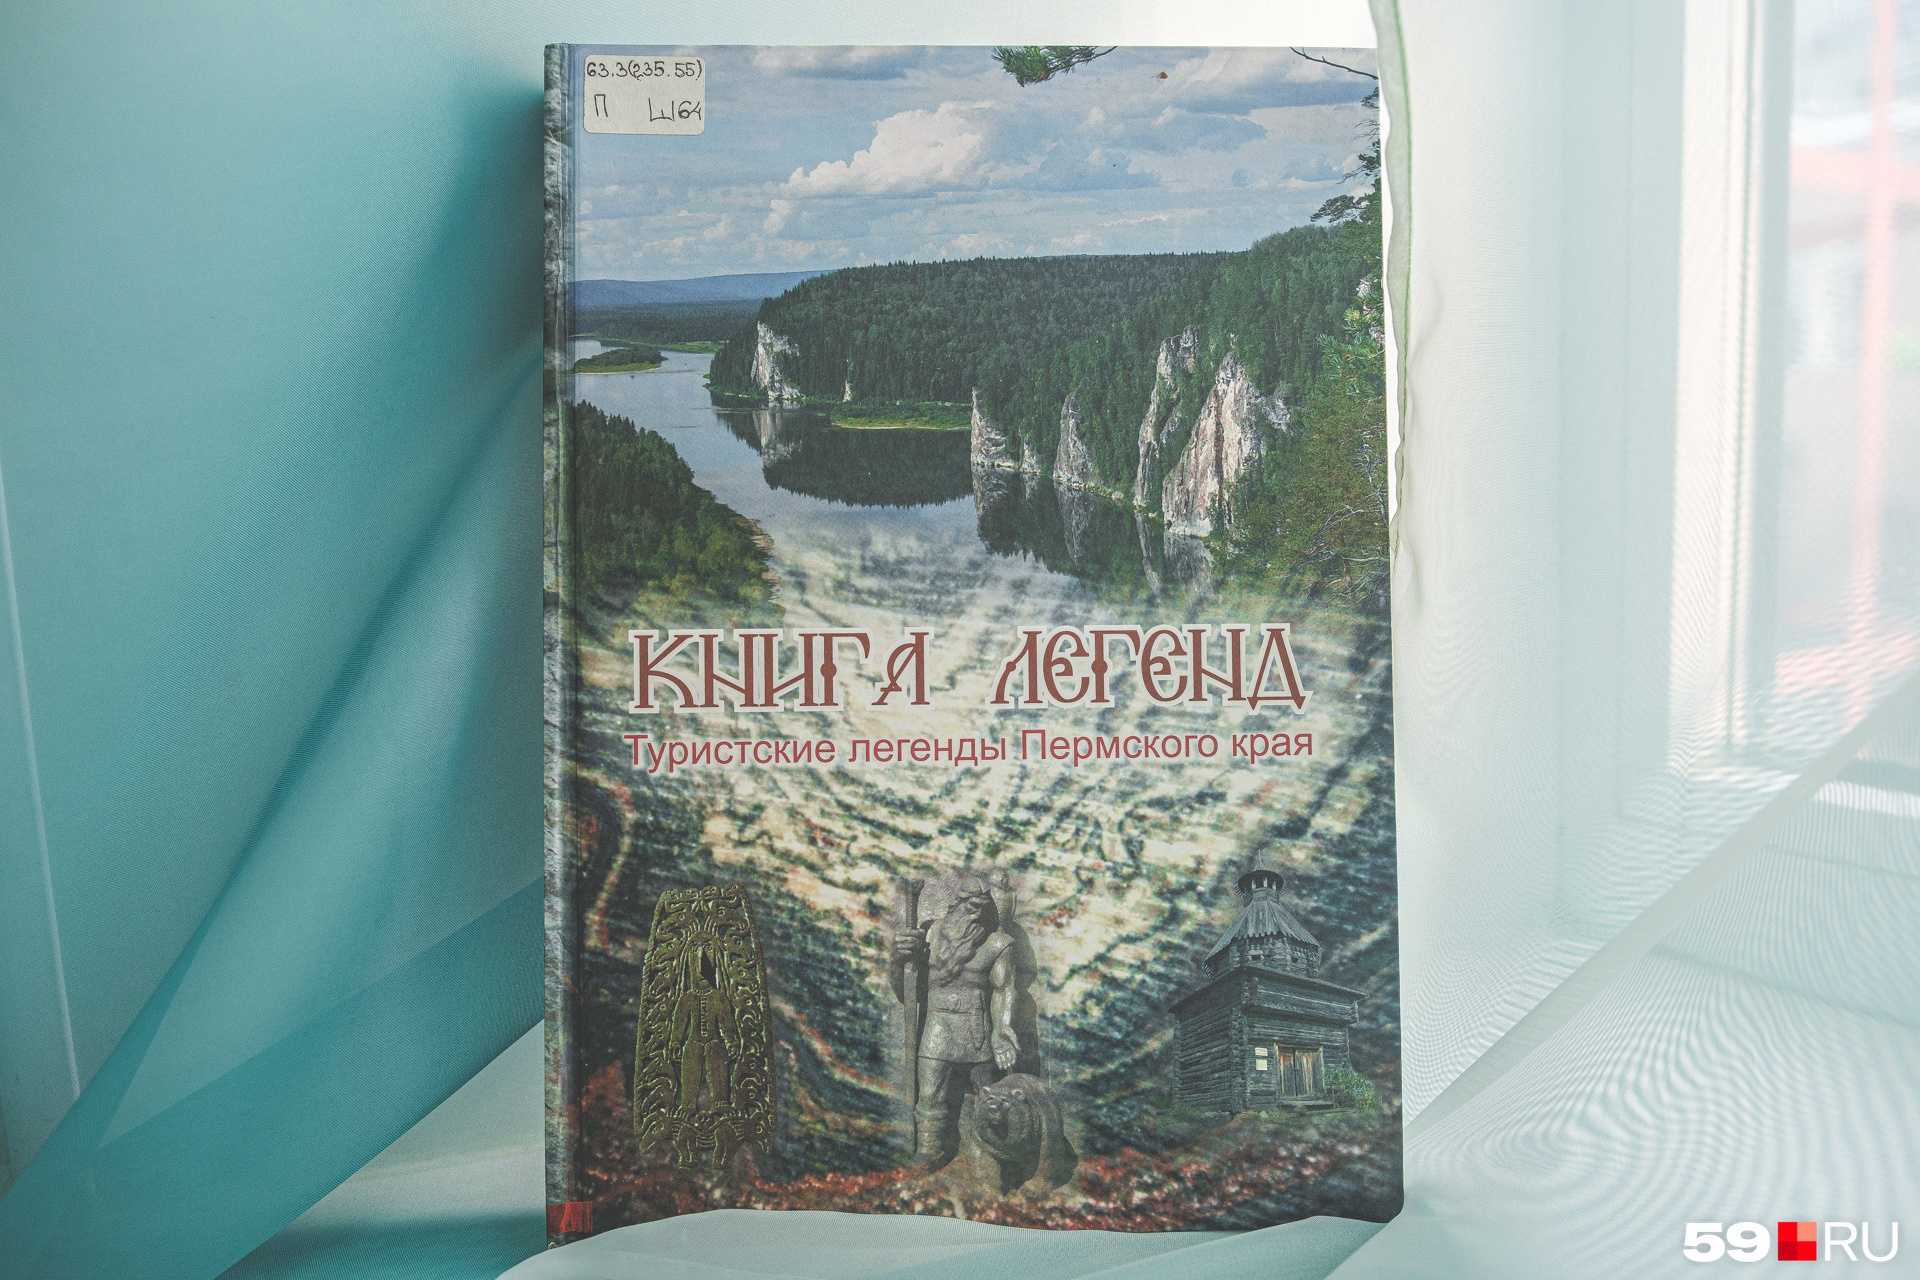 Книга Павла Ширинкина о туристских легендах Прикамья (12+) уже выдержала несколько переизданий